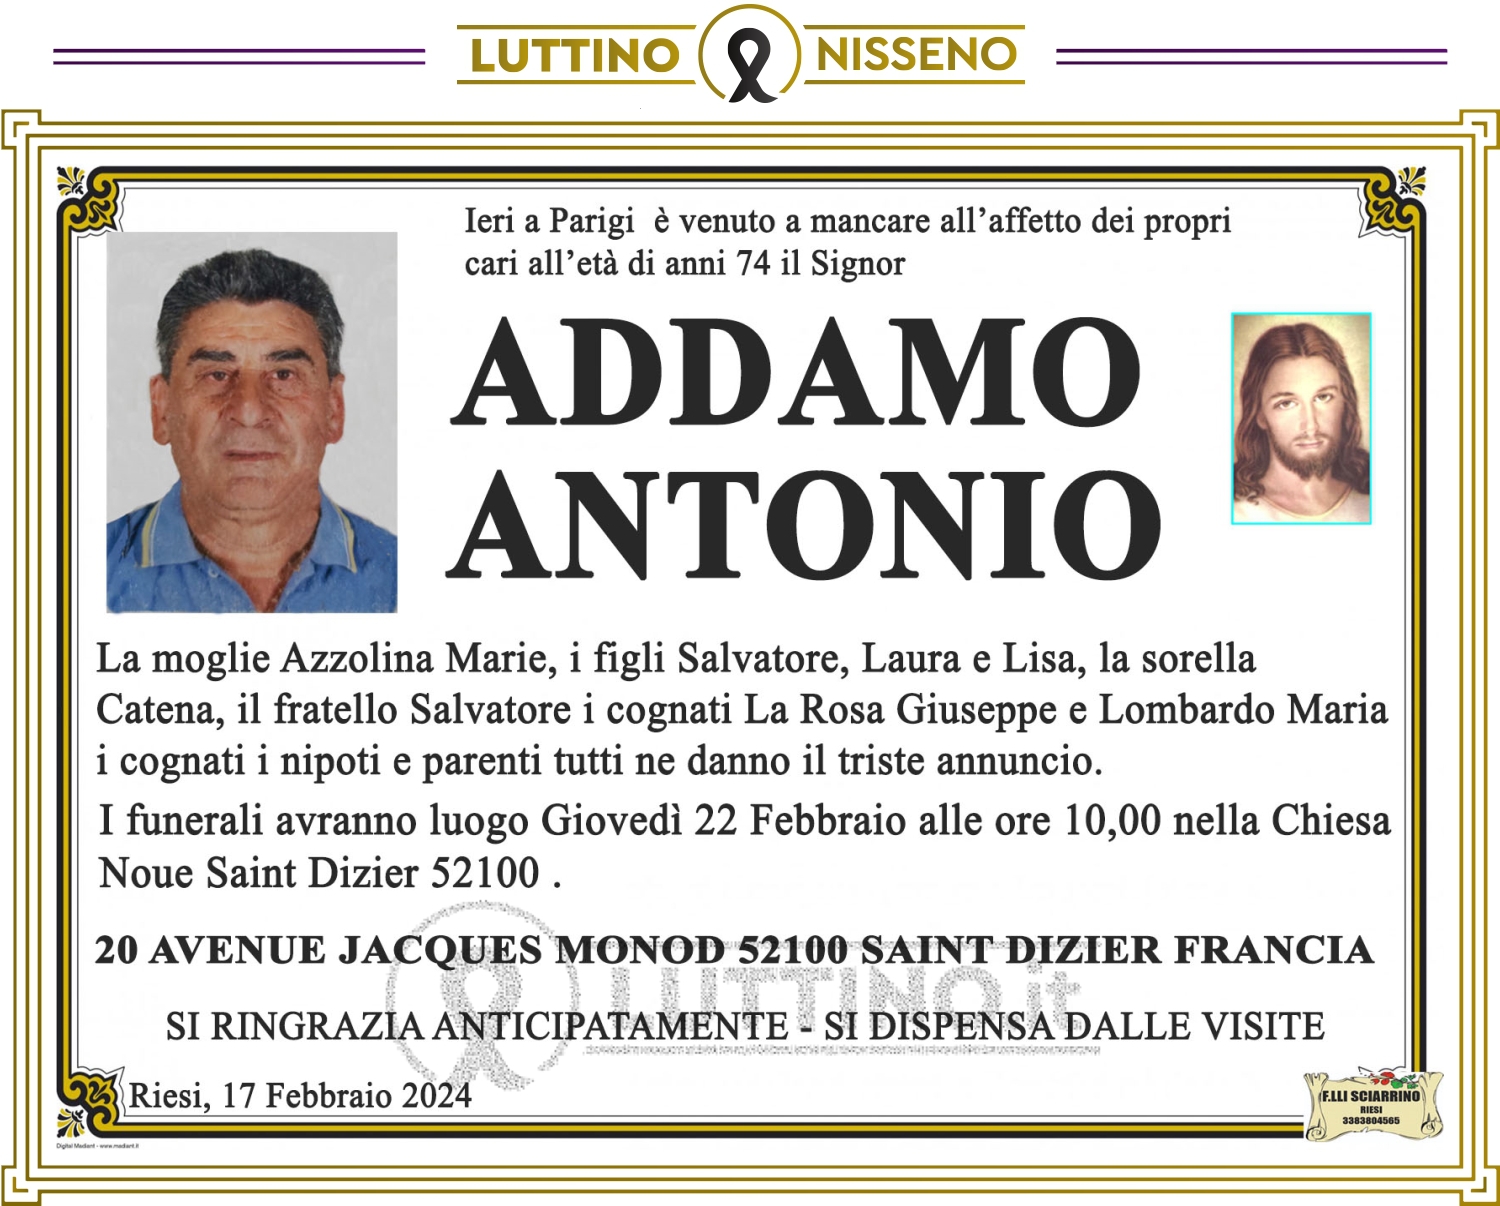 Antonio Addamo